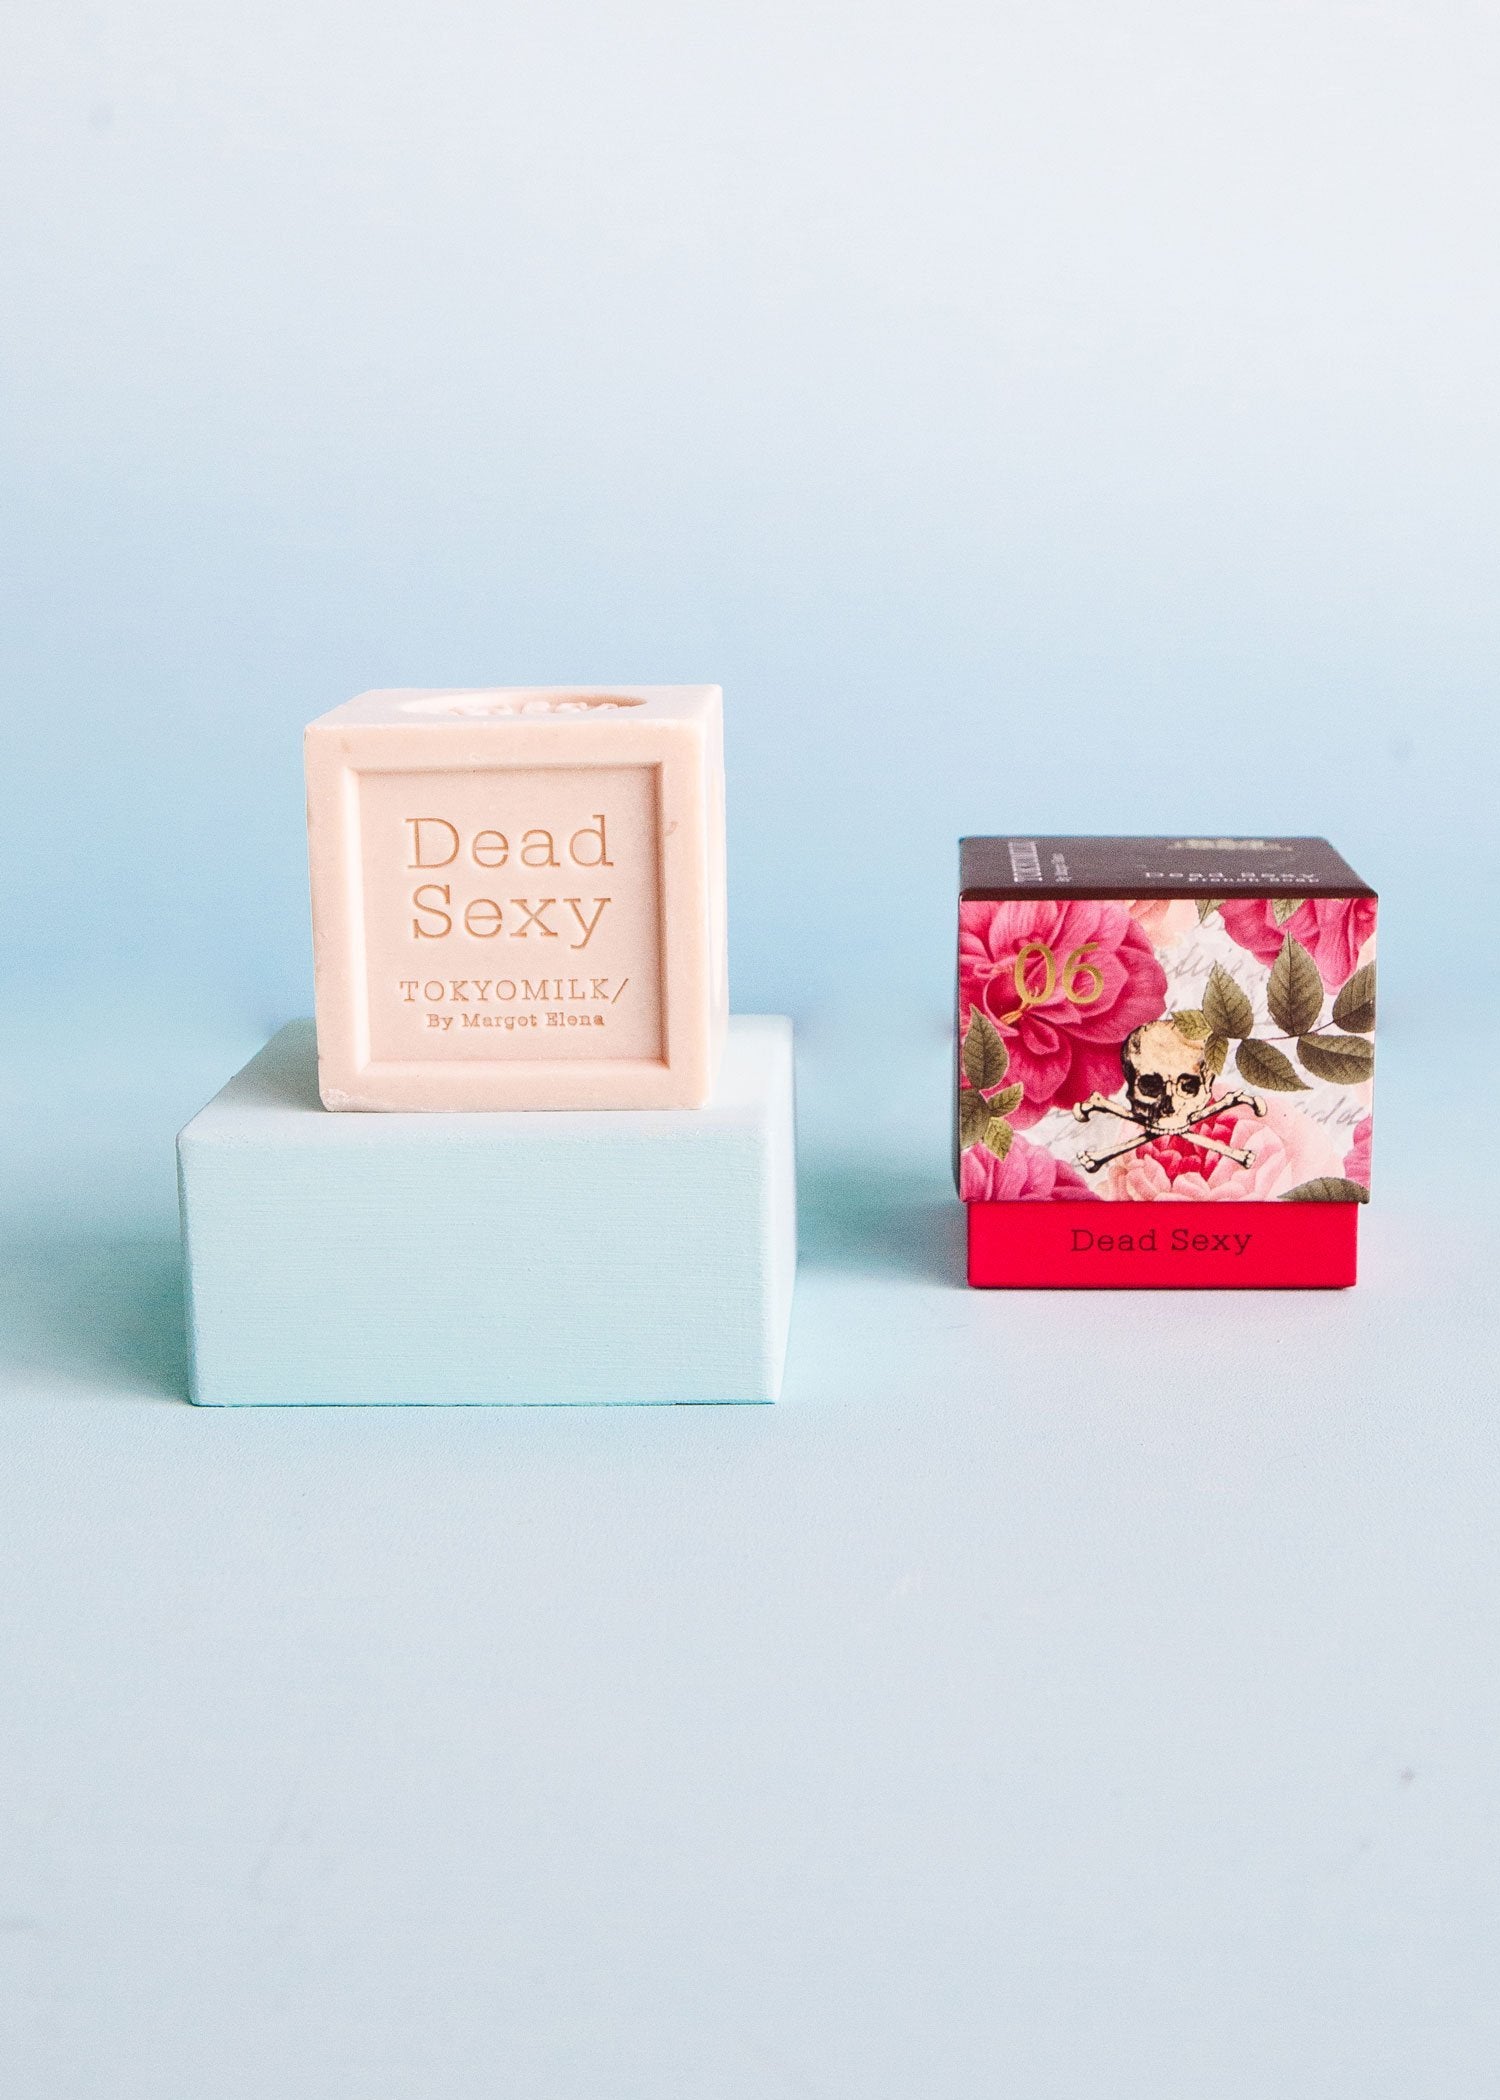 Dead Sexy Boxed Soap